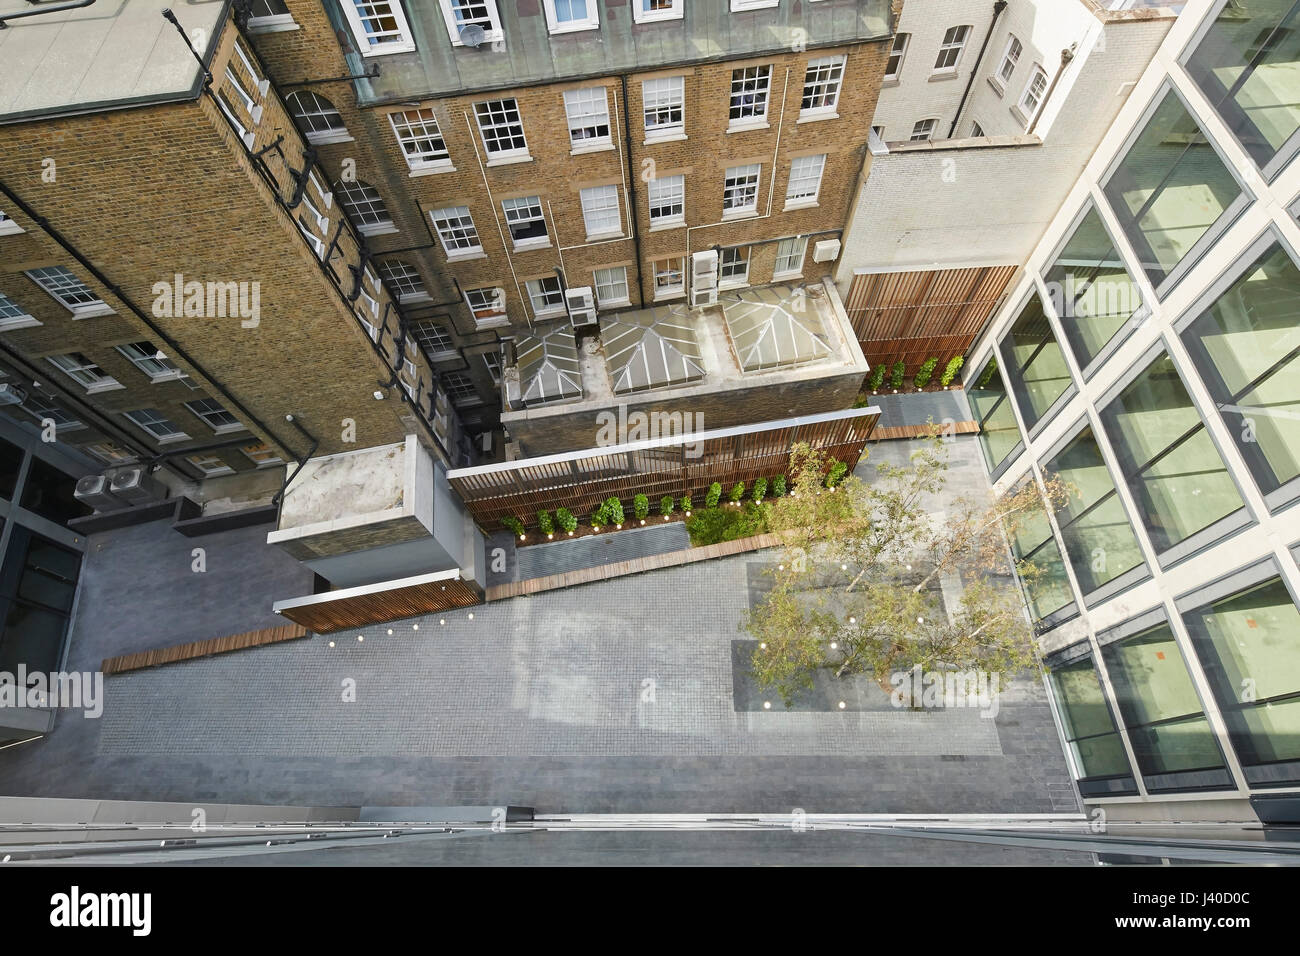 Vogelperspektive in Richtung Innenhof. Chancery Lane, London, Vereinigtes Königreich. Architekt: Bennetts Associates Architects, 2015. Stockfoto